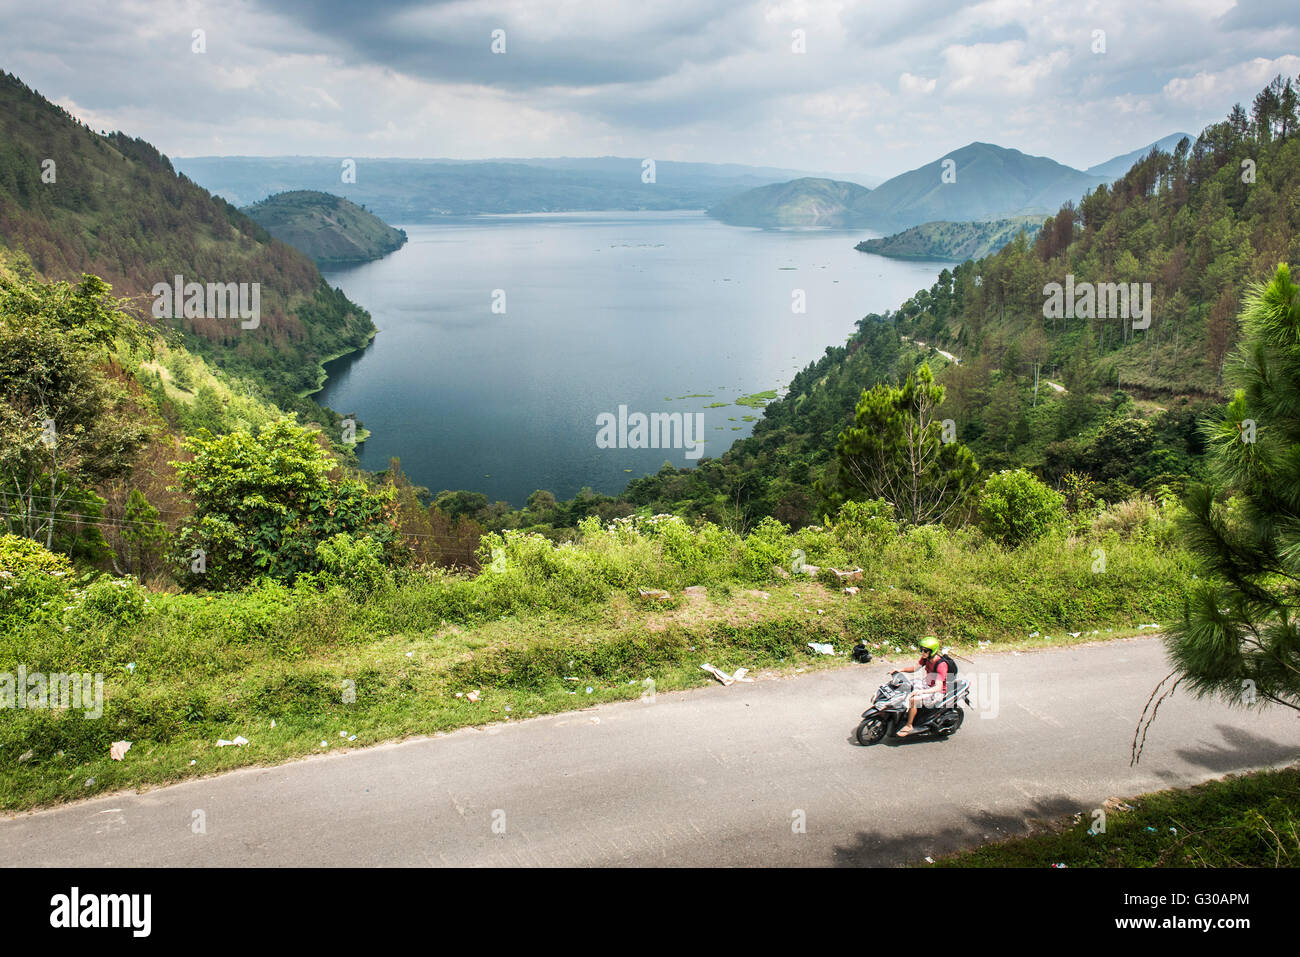 Tourist exploring Lake Toba (Danau Toba) by motorcycle, North Sumatra, Indonesia, Southeast Asia, Asia Stock Photo